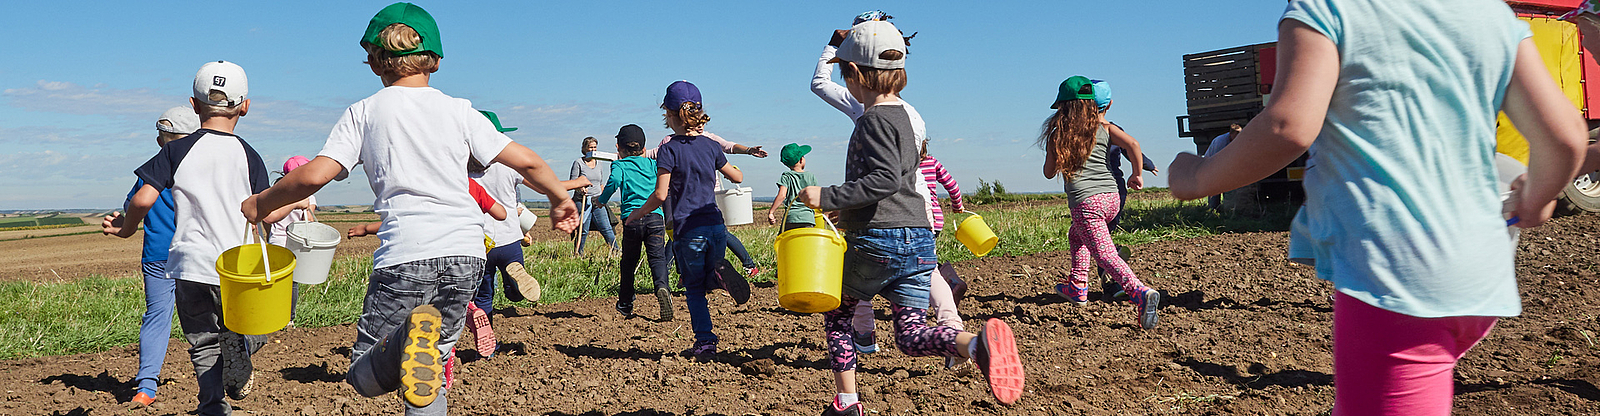 Kinder rennen mit Eimern über das Kartoffelfeld